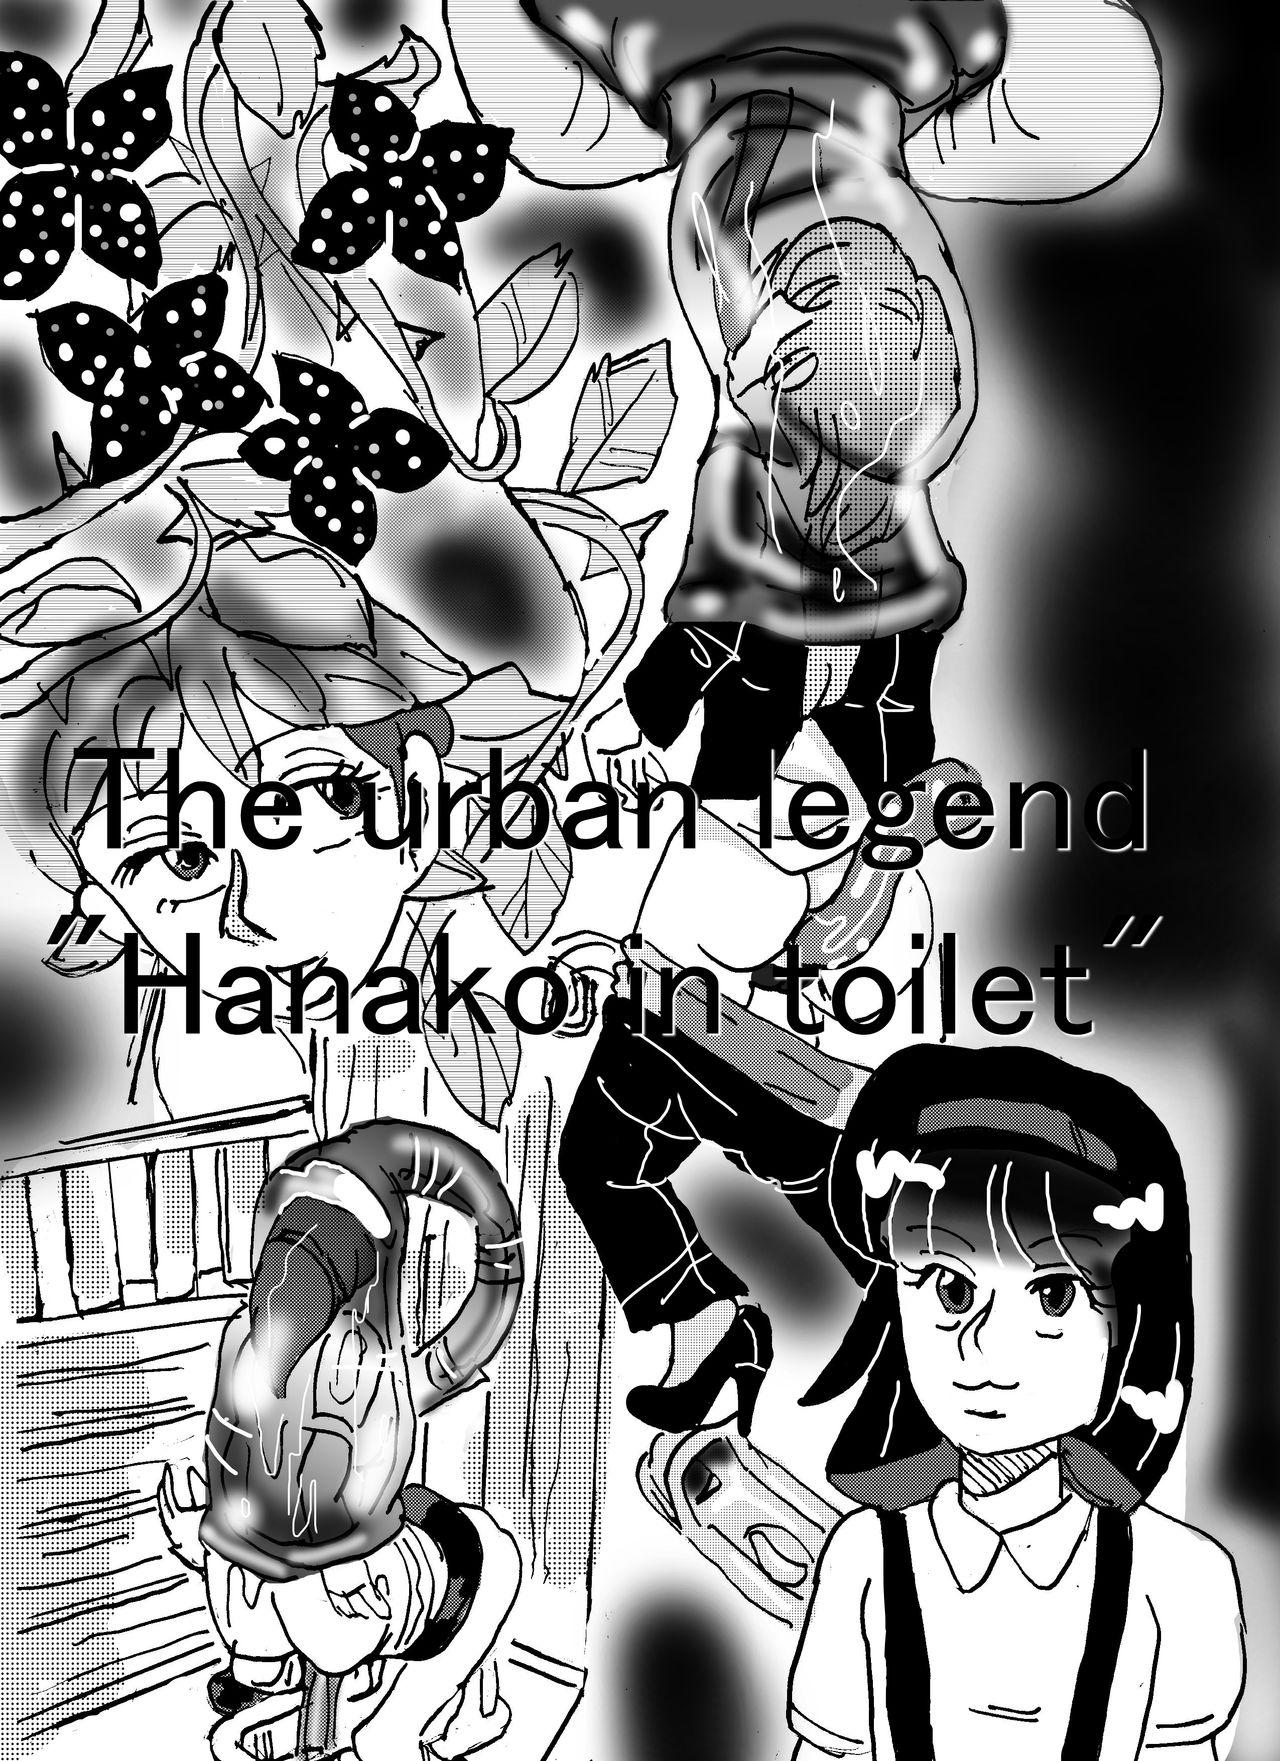 Bigbutt Urban legend "Ha*ako in toilet" - Original Chileno - Picture 1